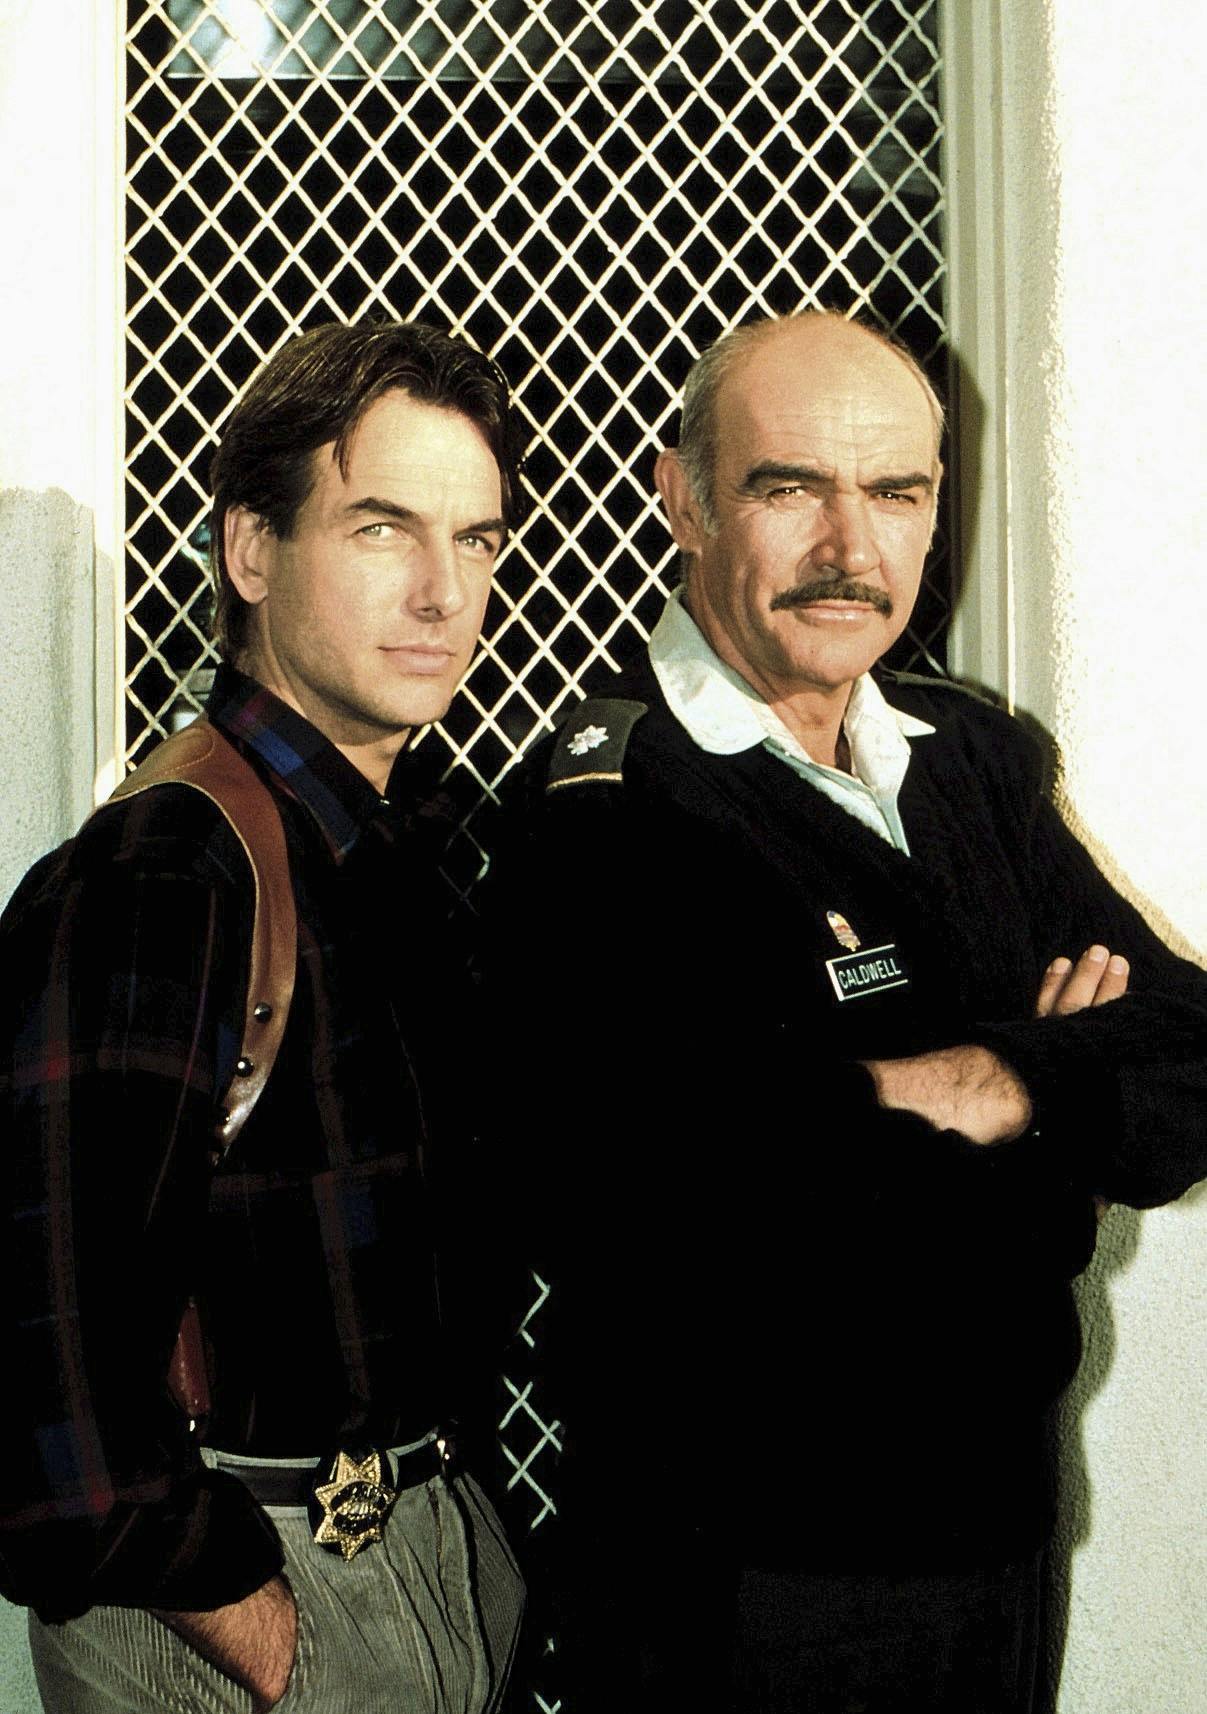 1986 &amp; 1989

Lad os præsentere to hotte fyre anno slut-80’erne: Mark Harmon, 71, og Sean Connery, som i 1988 begge medvirkede i filmen “The Presidio” – og de to har også begge løbet med den kåde kåring i hhv. ‘86 og ‘89.

Sean Connery døde 90